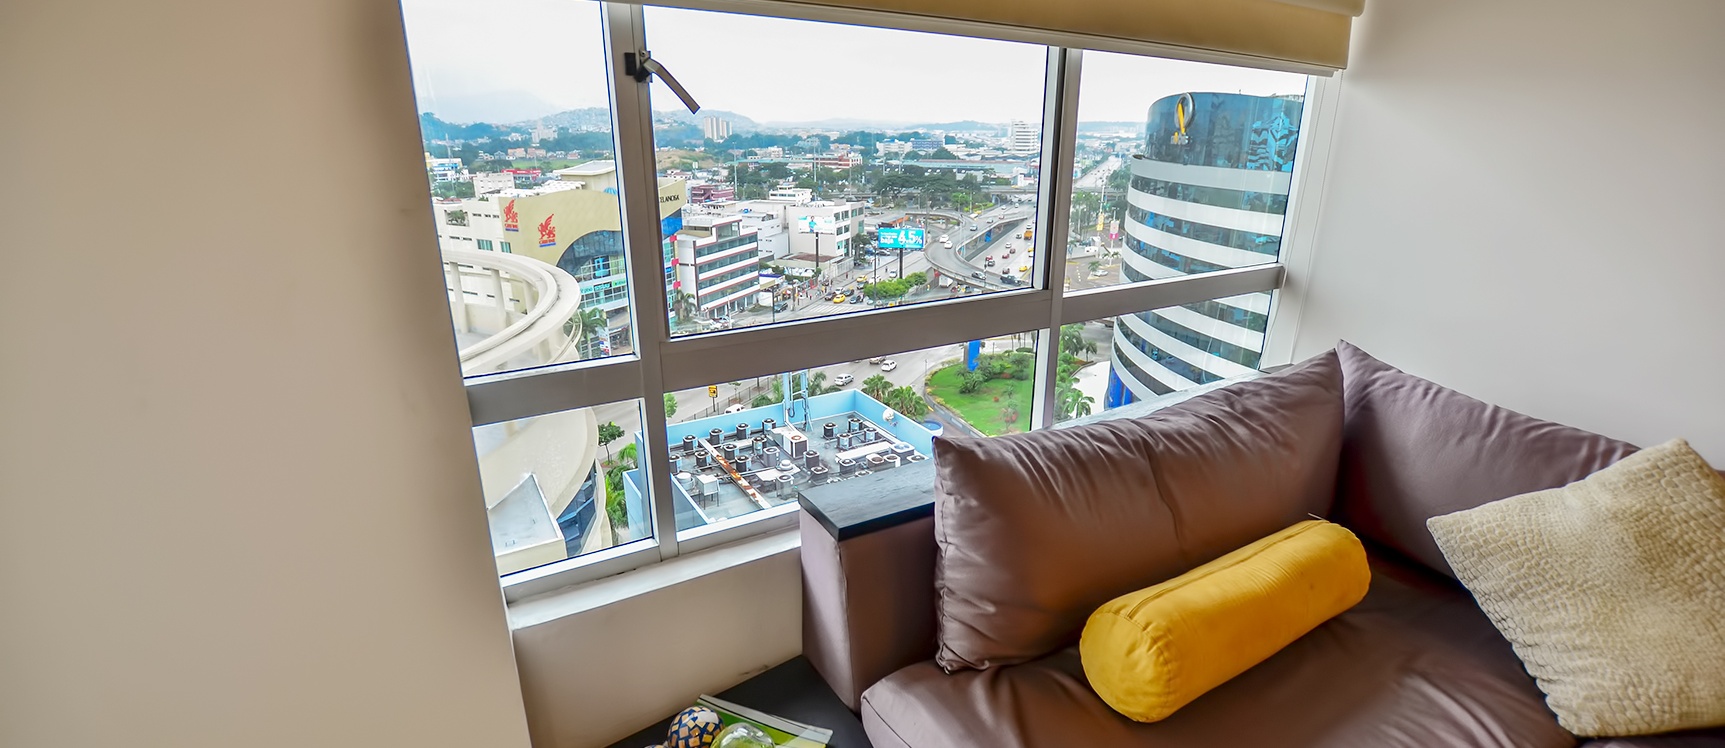 GeoBienes - Suite en alquiler en Torre del Sol I sector norte de Guayaquil - Plusvalia Guayaquil Casas de venta y alquiler Inmobiliaria Ecuador